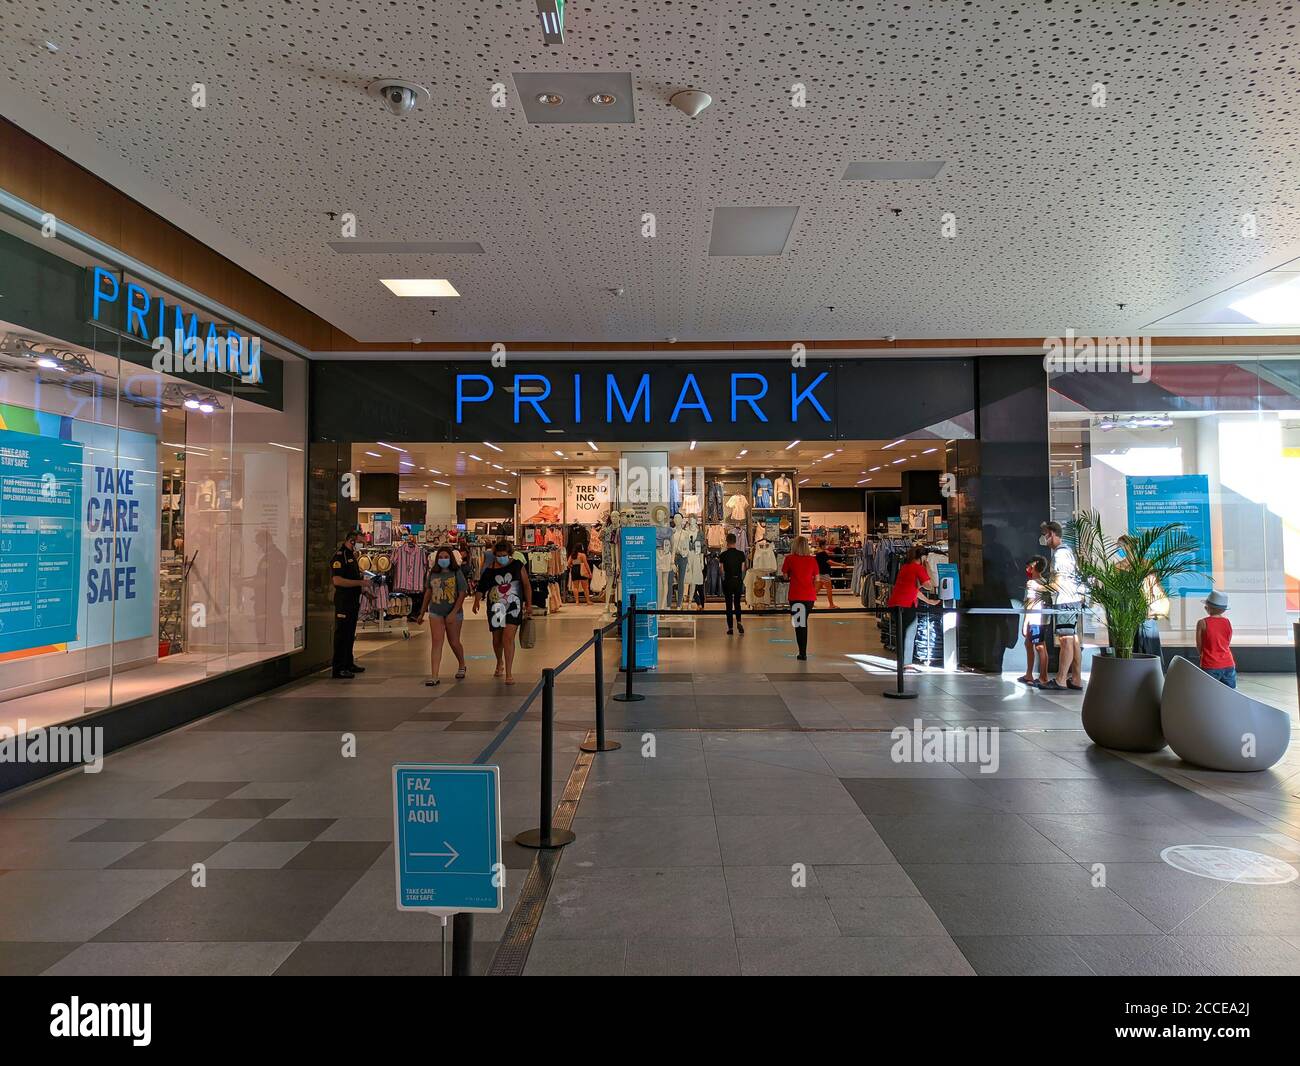 Portimao, Portugal - July 11, 2020: Access control in Primark fashion retailer inside a mall in Portimao, Algarve, Portugal Stock Photo